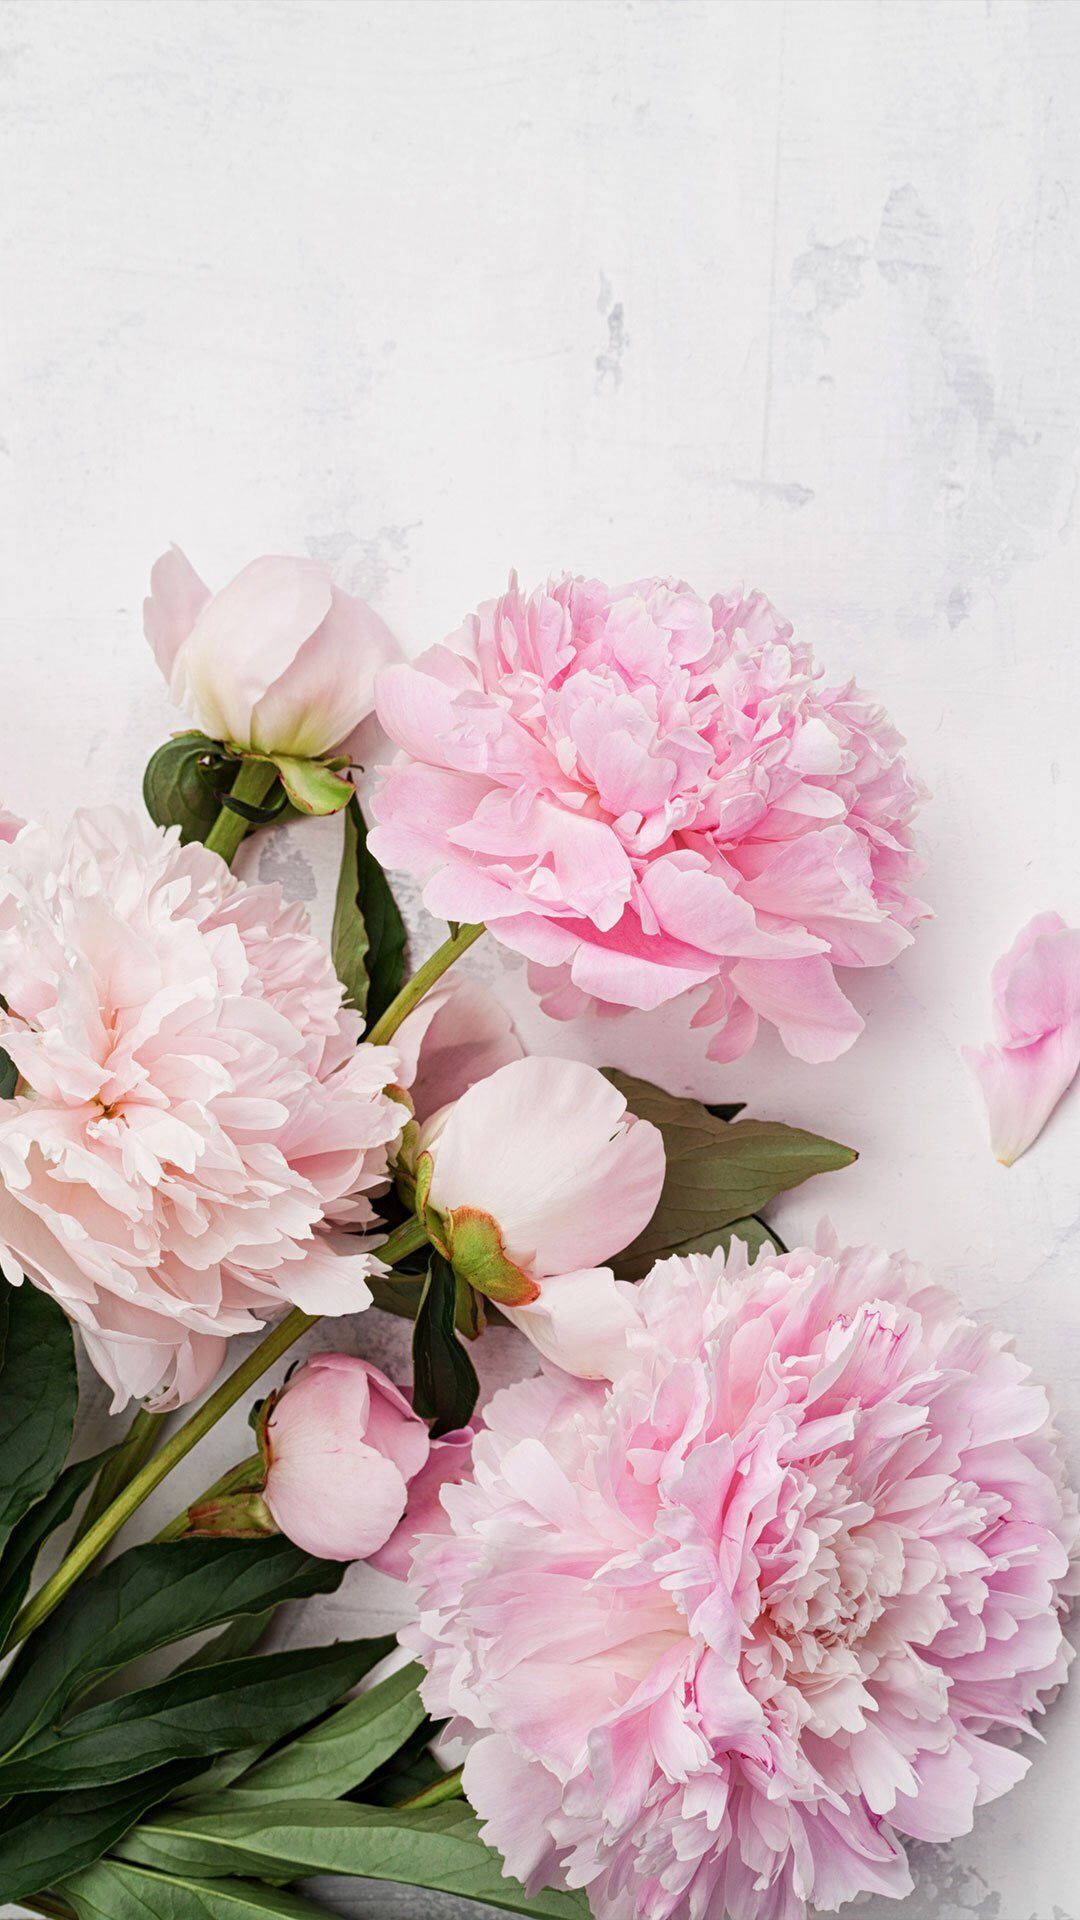 Hình nền hoa mẫu đơn màu hồng: Đem lại sự tươi mới và sự tươi tắn trên màn hình của bạn với hình nền hoa mẫu đơn màu hồng. Những bông hoa nhỏ xinh này sẽ mang đến cho bạn sự yêu thương và sự cảm động khi nhìn vào chúng, đồng thời tạo nên một không gian sống động, tràn đầy sức sống trong ngôi nhà của bạn.